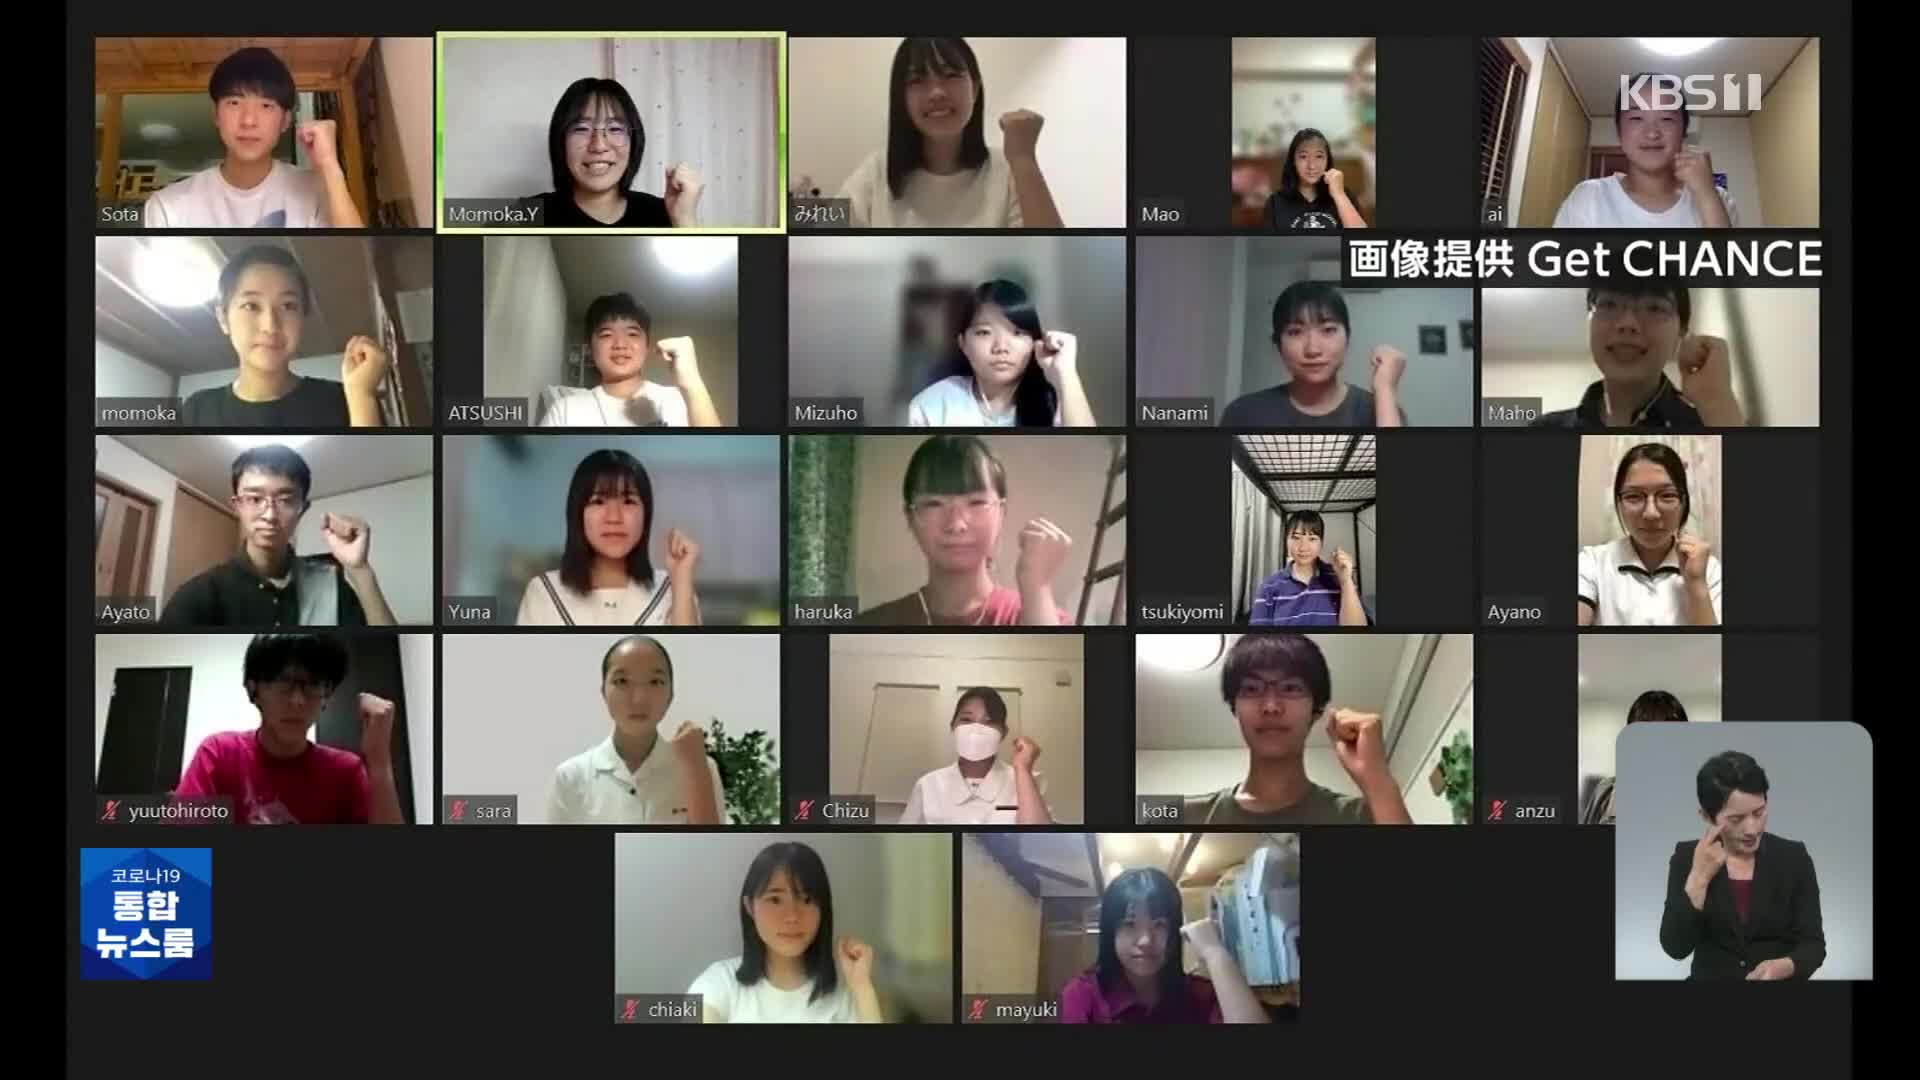 일본 고등학생들의 의미있는 ‘교육격차’ 해소 봉사 활동